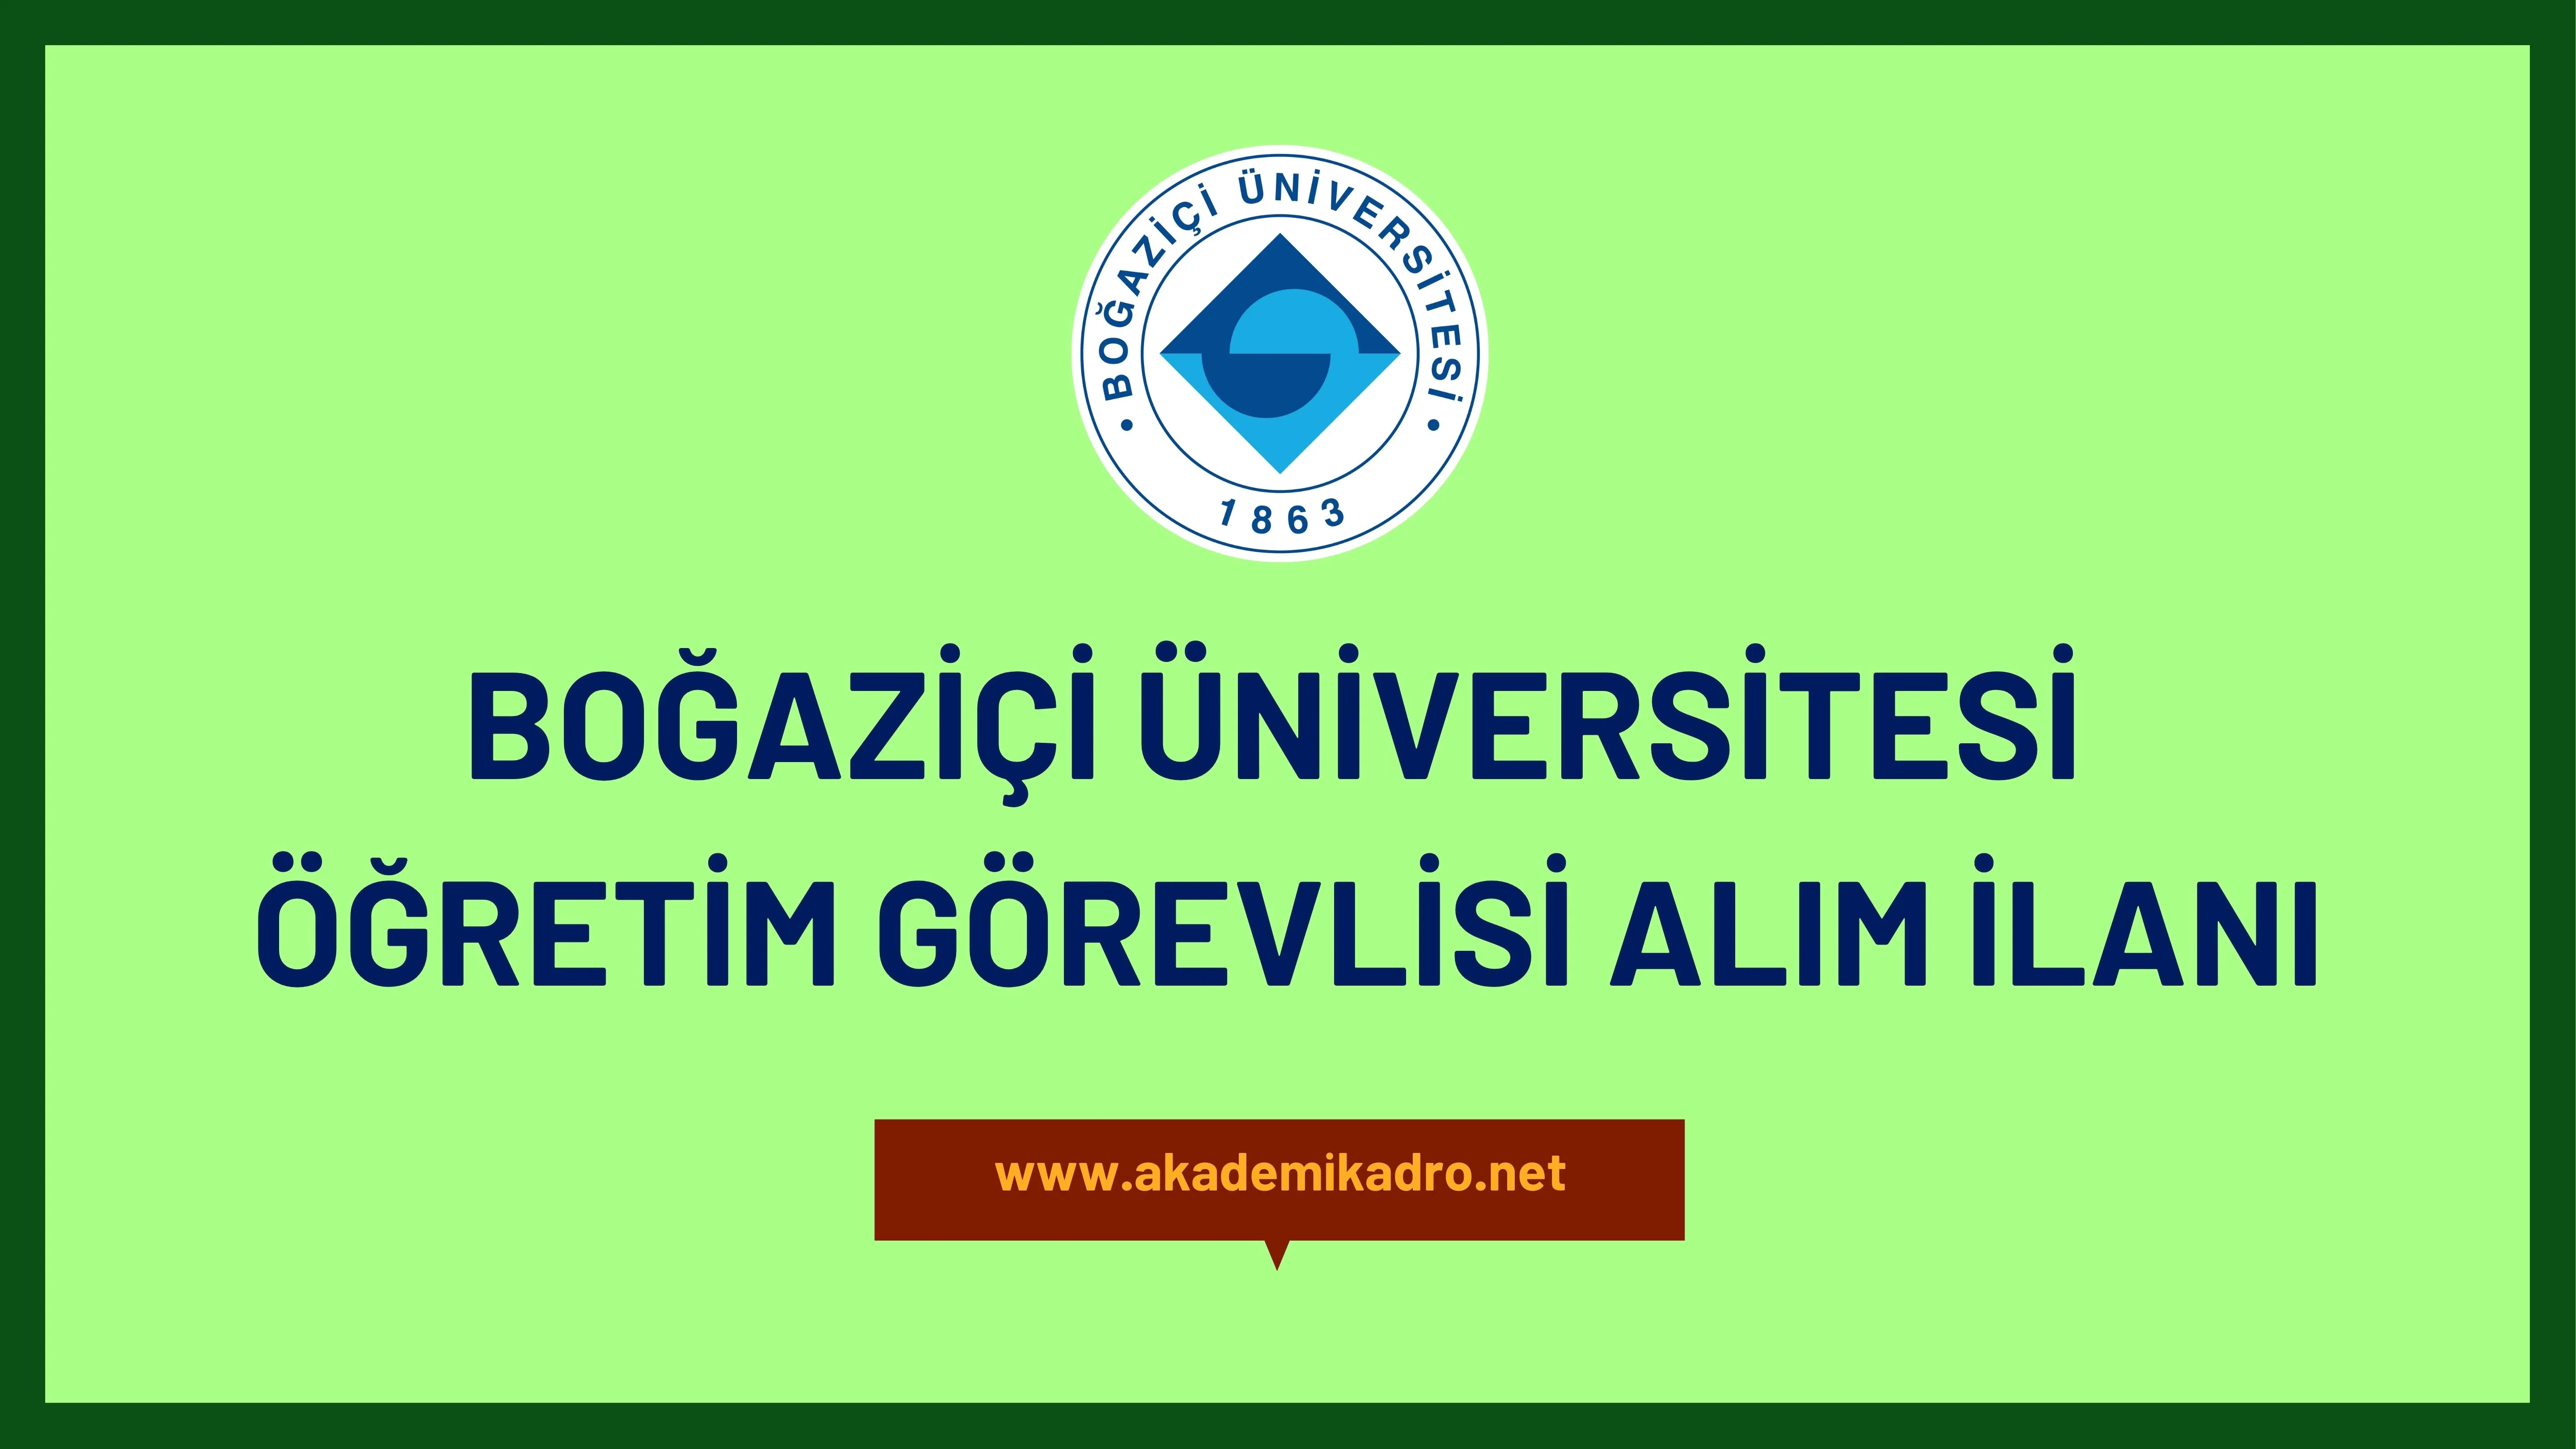 Boğaziçi Üniversitesi çeşitli branşlarda 3 Öğretim görevlisi alacak.